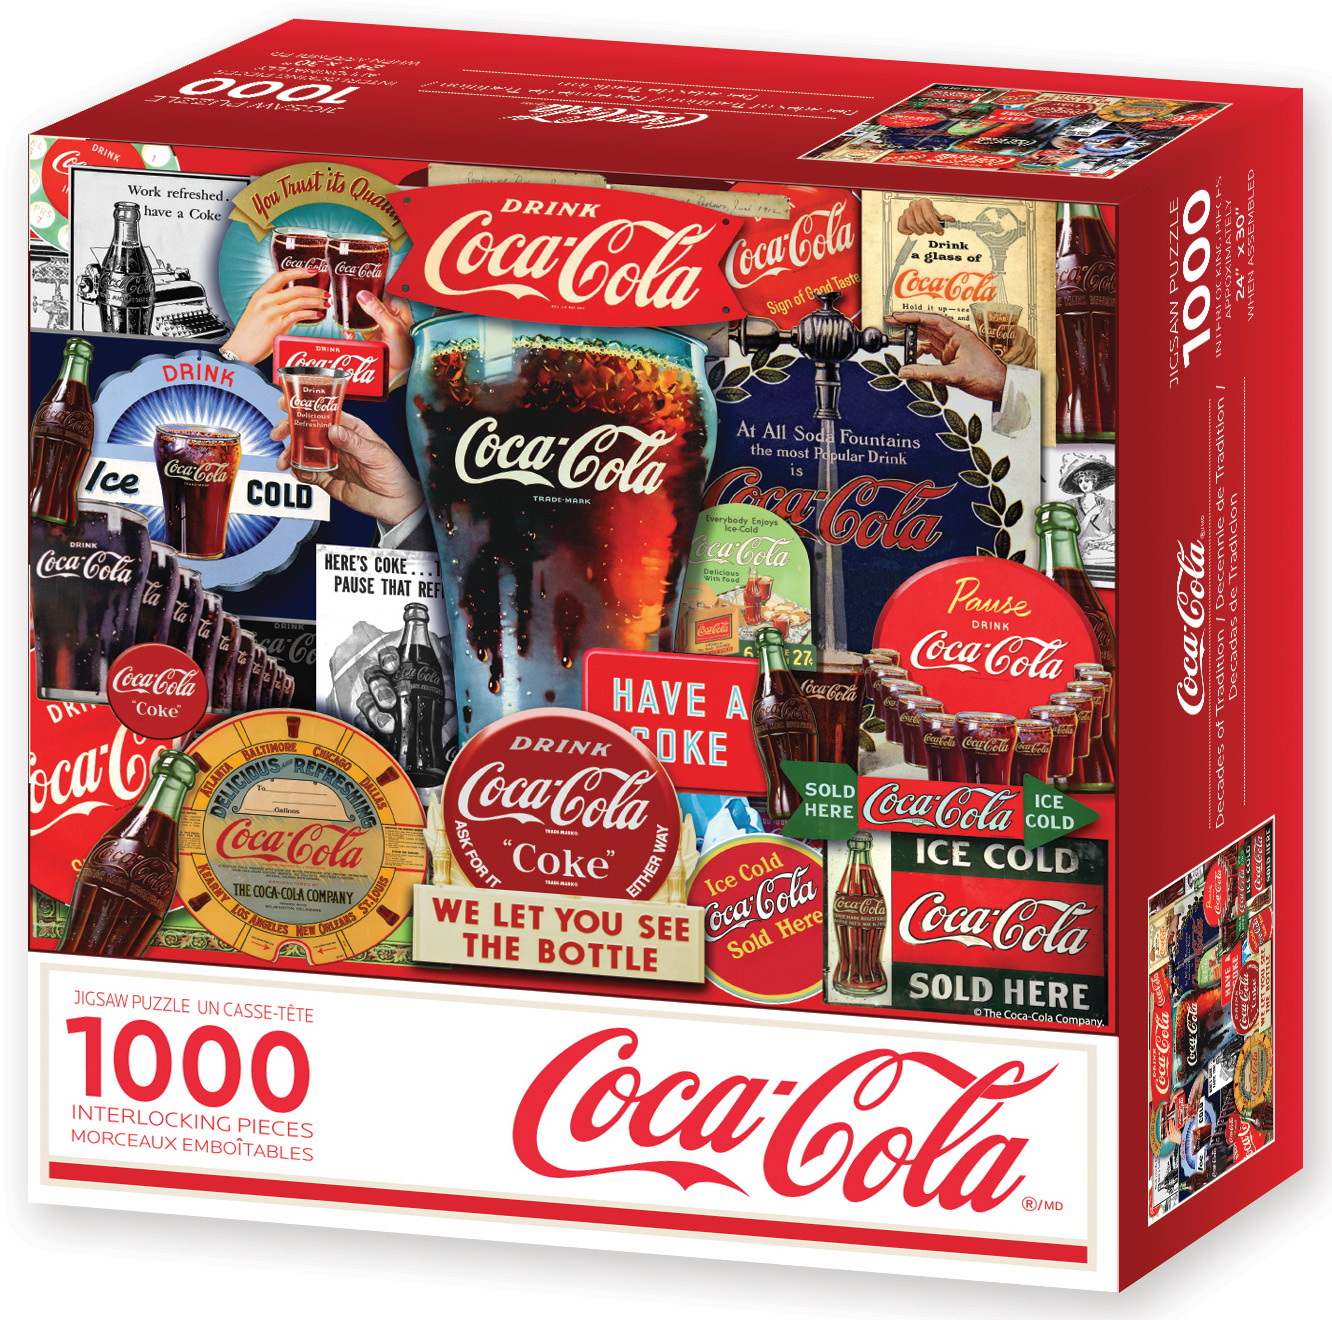 Coca Cola Decades of Tradition